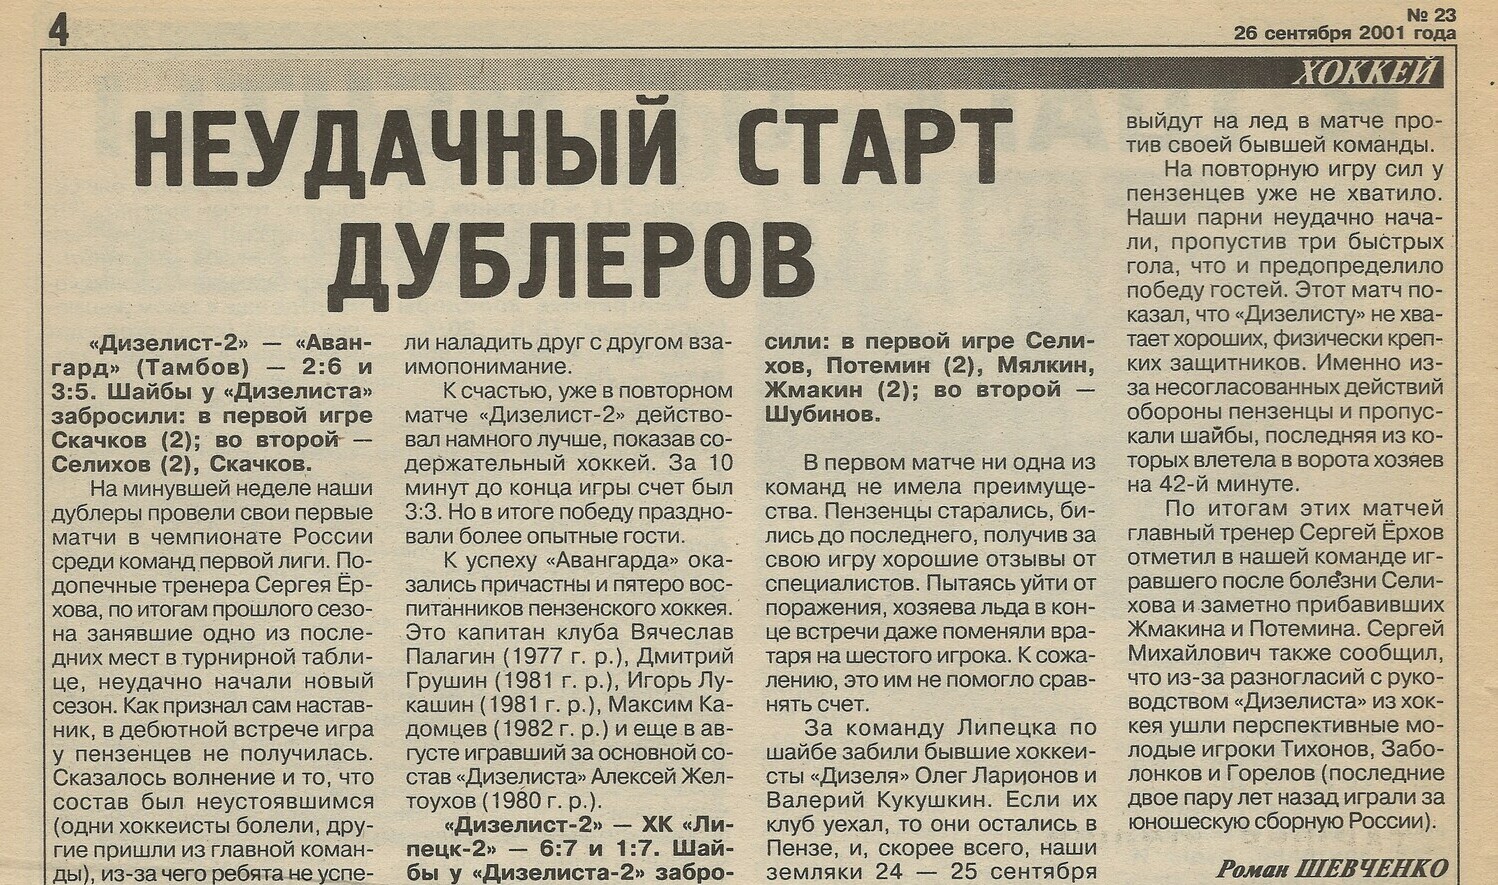 "Пенза спортивная" №23 от 26.09.2001г.